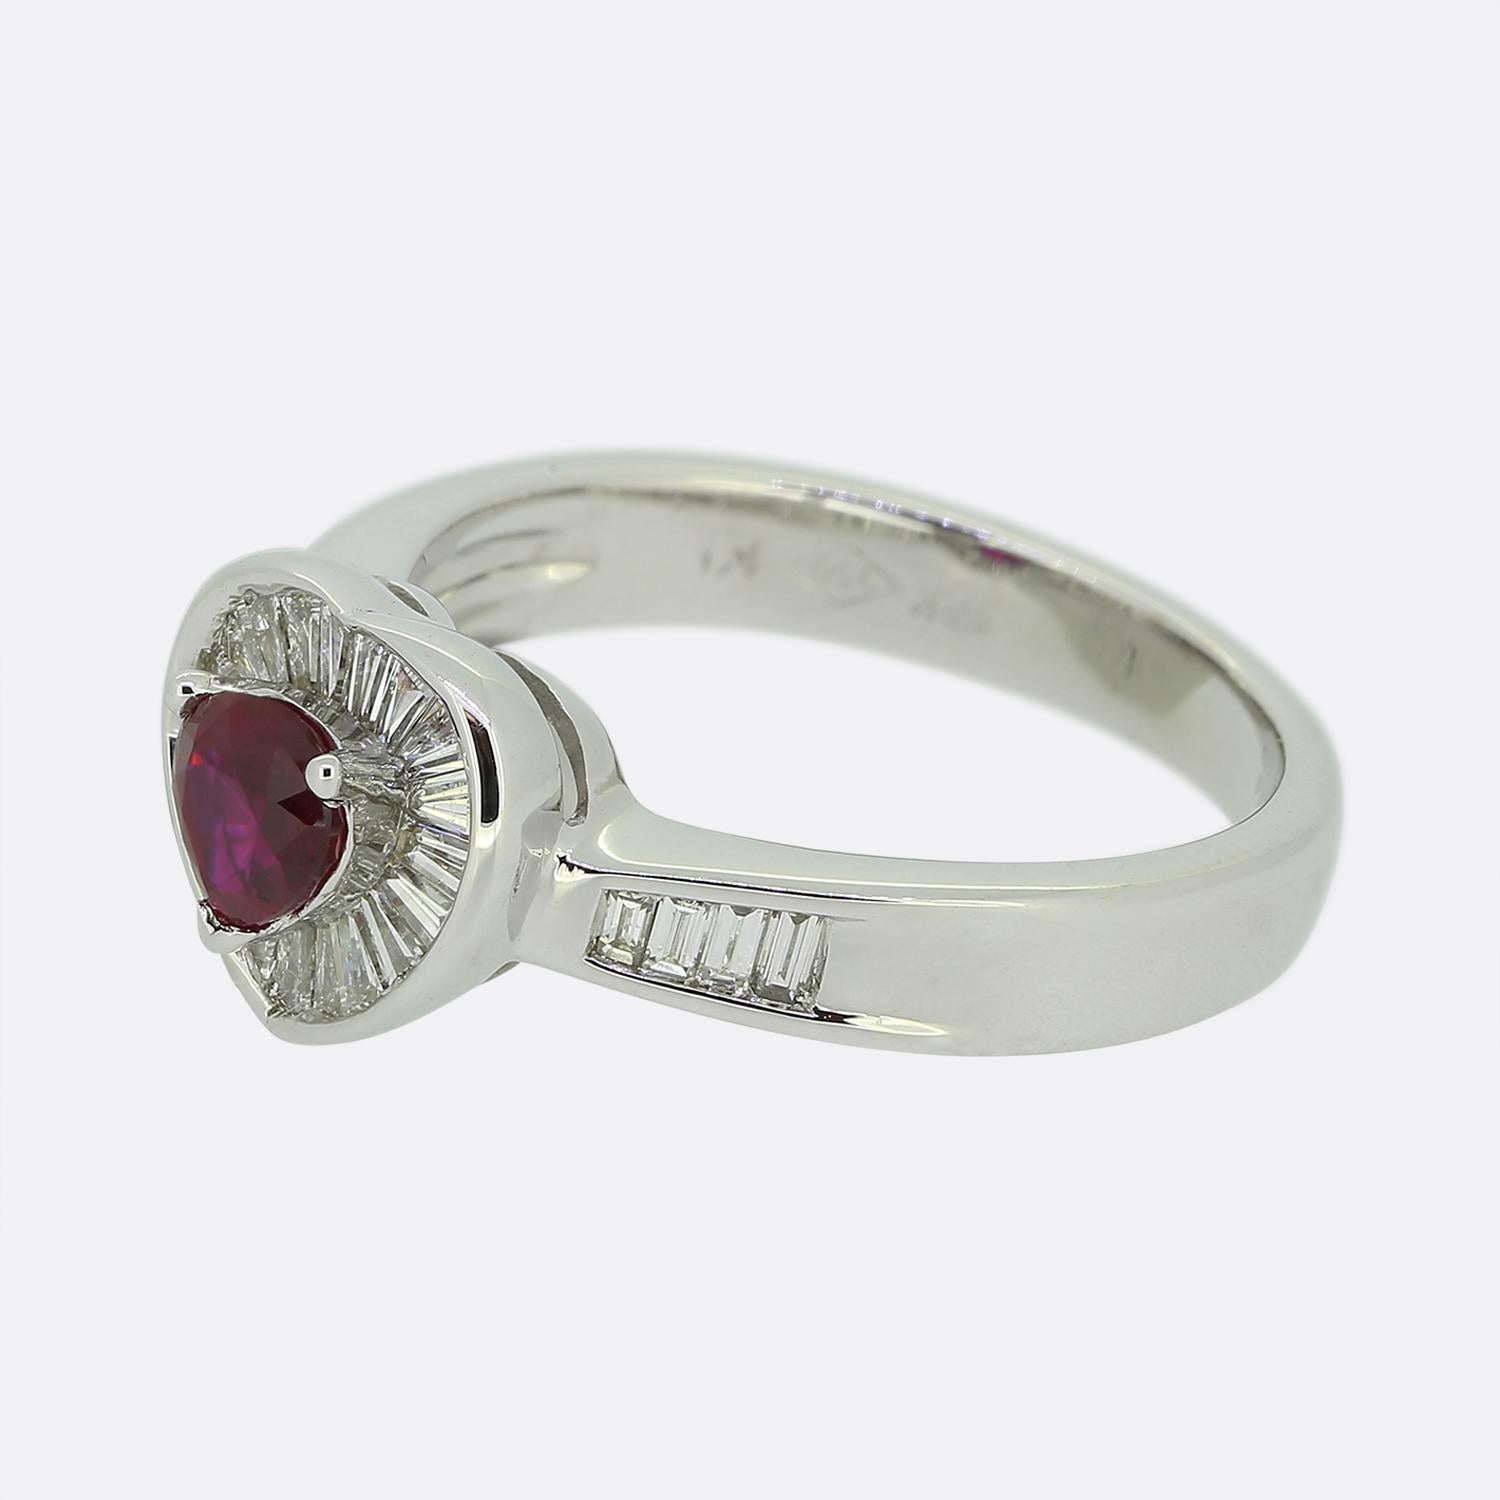 Hier haben wir einen entzückenden Ring aus 18 Karat Weißgold mit Rubin und Diamanten. Der zentrale Rubin ist herzförmig, sitzt leicht erhöht und besitzt einen sehr begehrten intensiven roten Farbton. Um diesen Hauptstein herum befinden sich mehrere